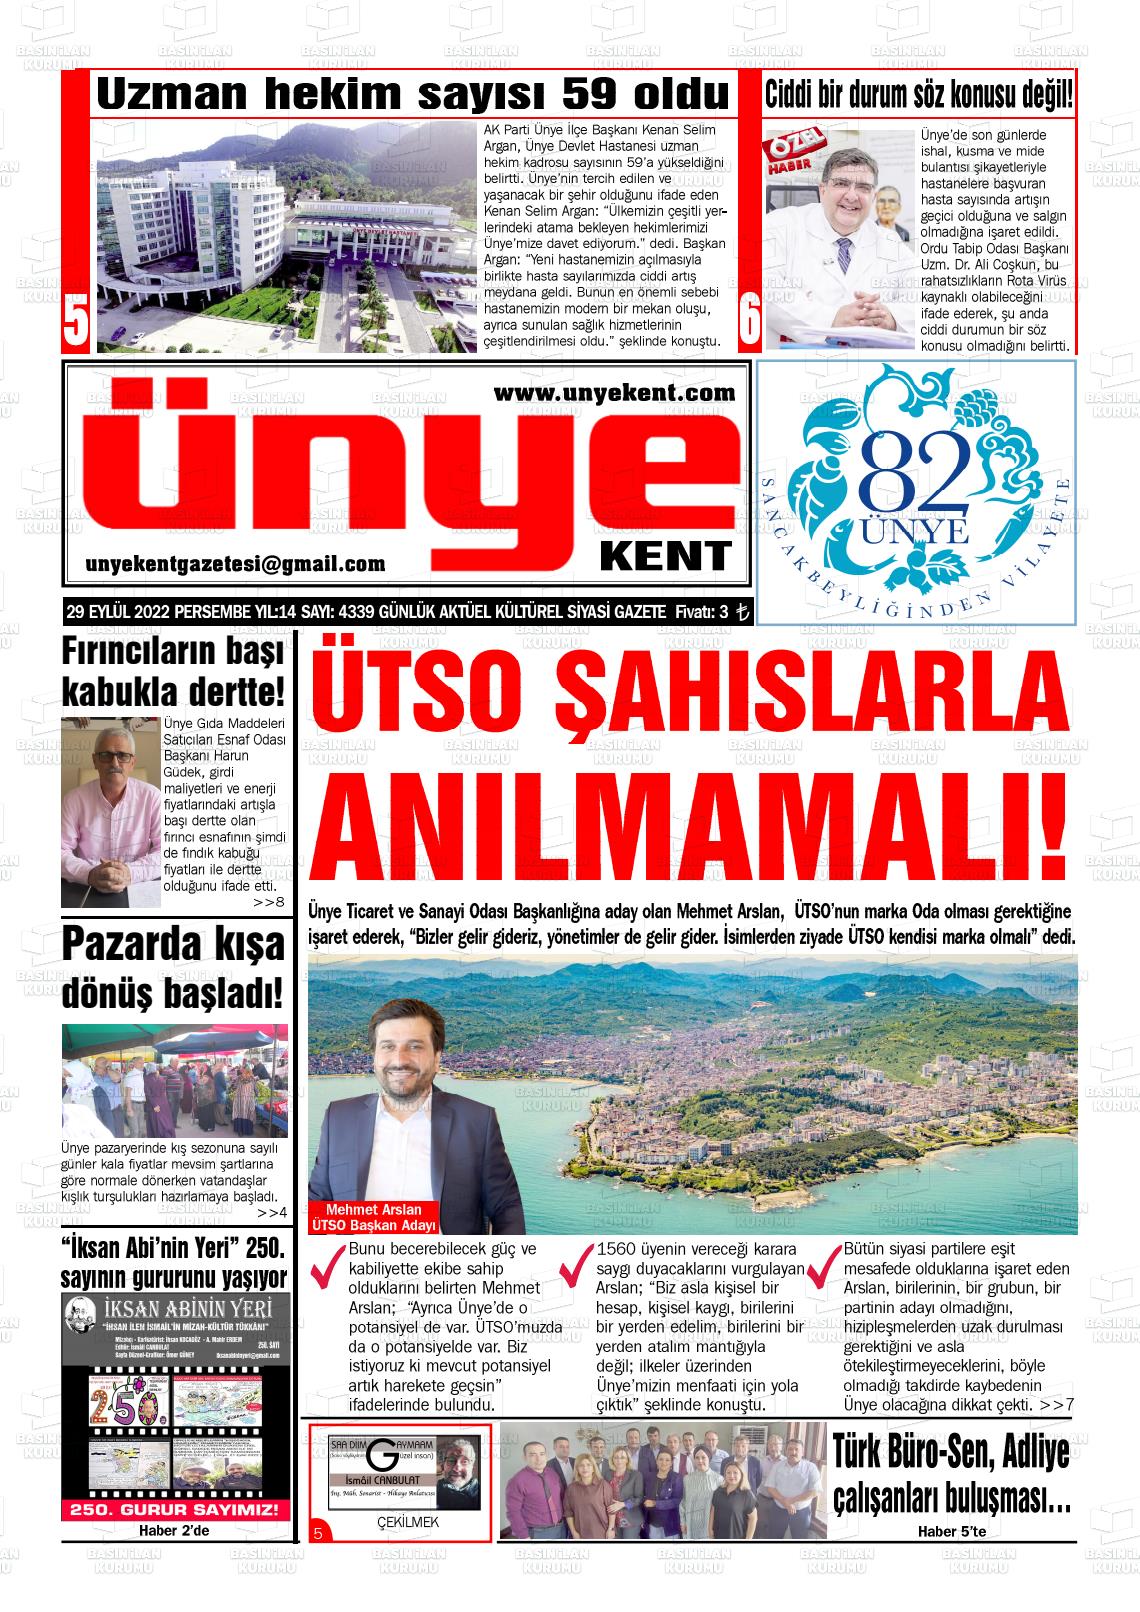 29 Eylül 2022 Ünye Kent Gazete Manşeti